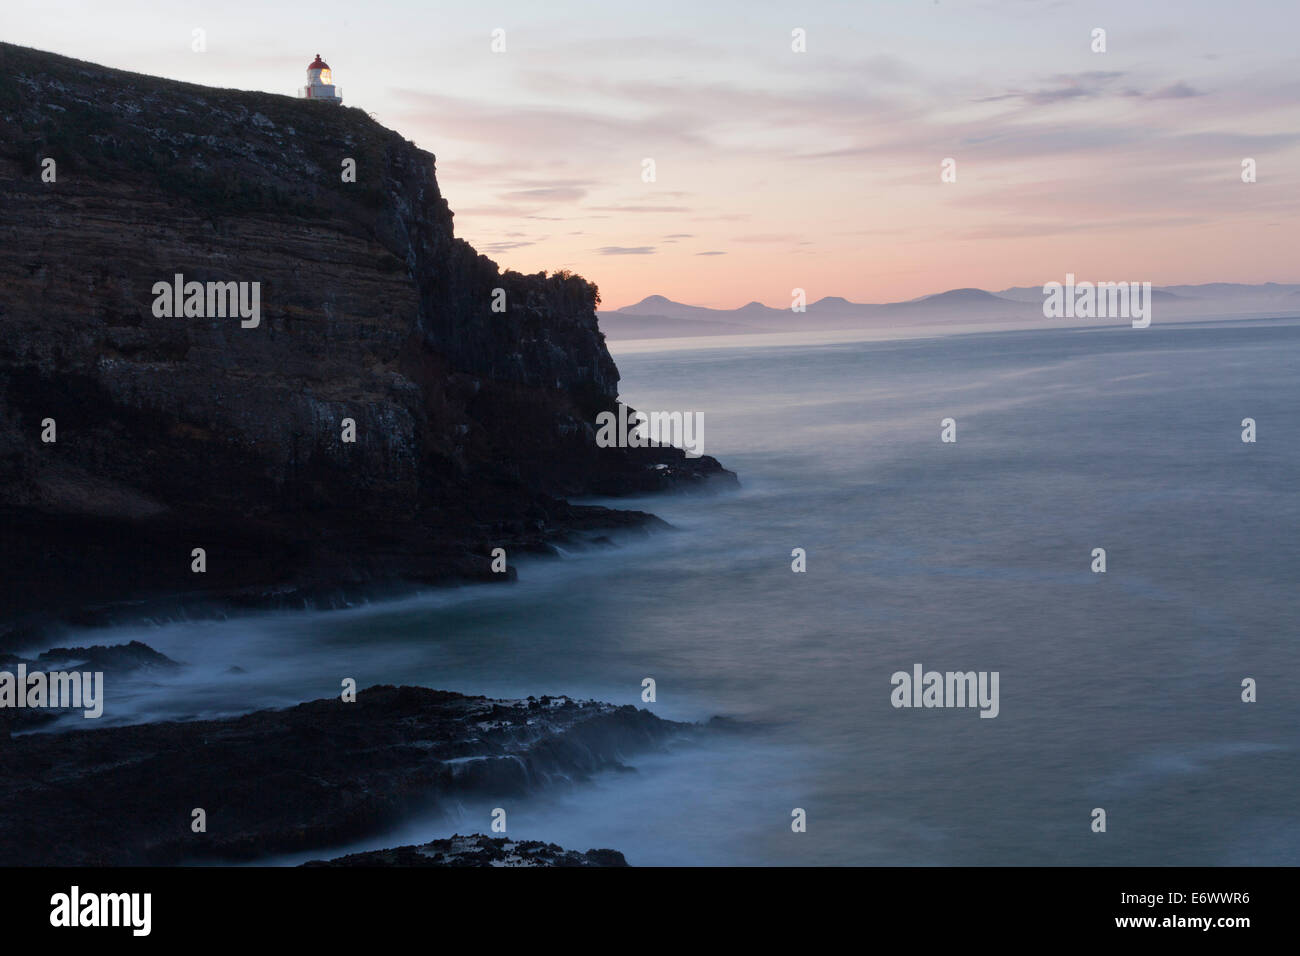 Taiaroa Head lighthouse at dusk, Otago Peninsula, South Island, New Zealand Stock Photo